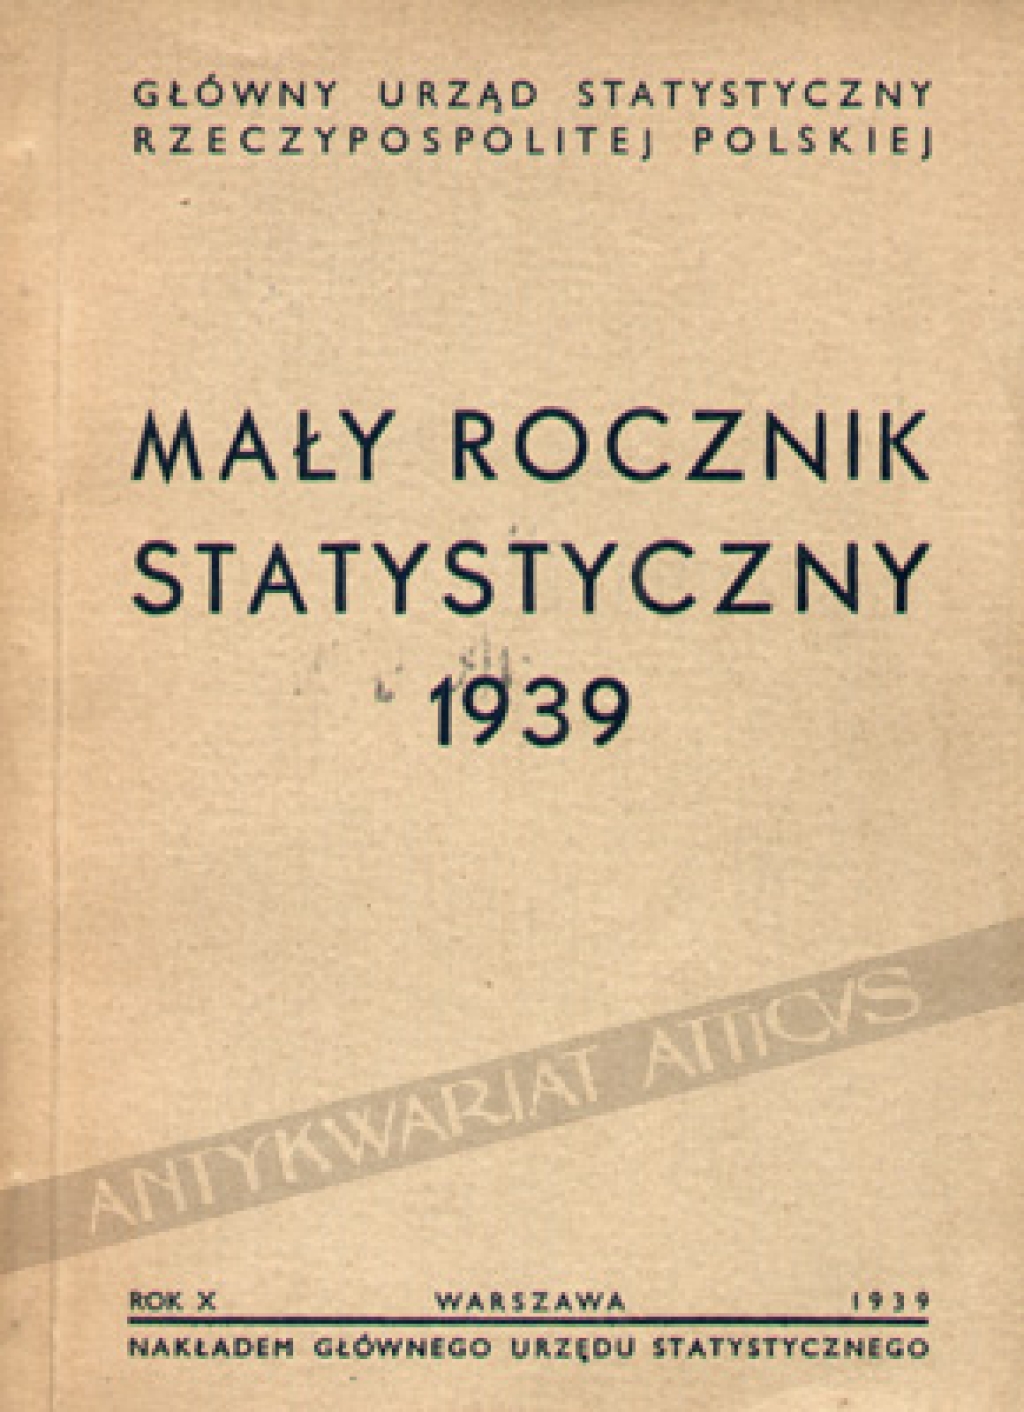 Mały rocznik statystyczny 1939, rok wydawnictwa X [wyd. oryginalne]